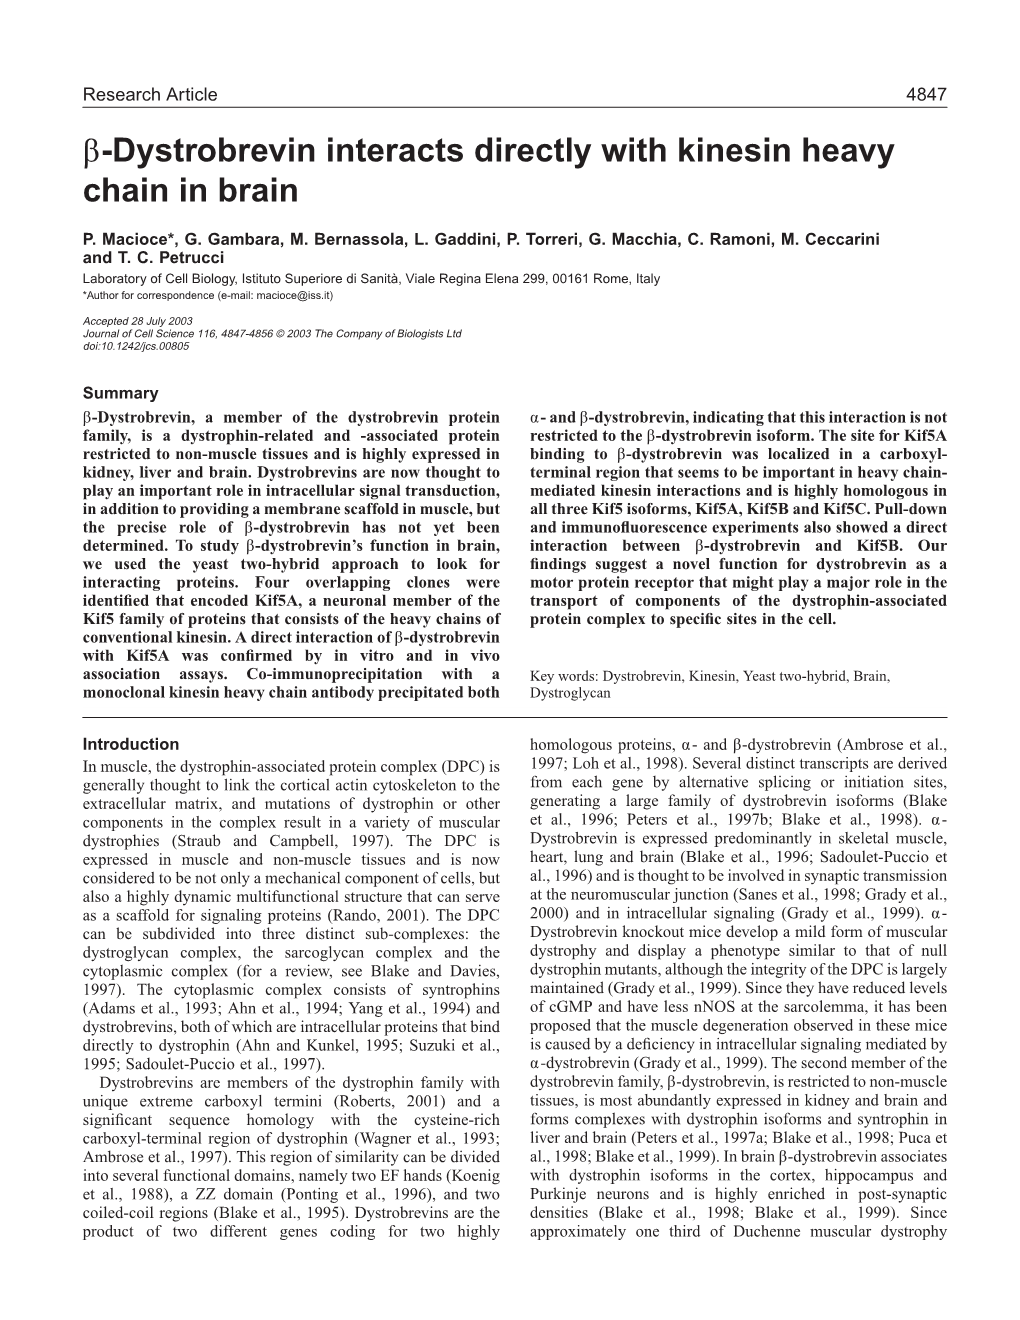 Β-Dystrobrevin Interacts Directly with Kinesin Heavy Chain in Brain